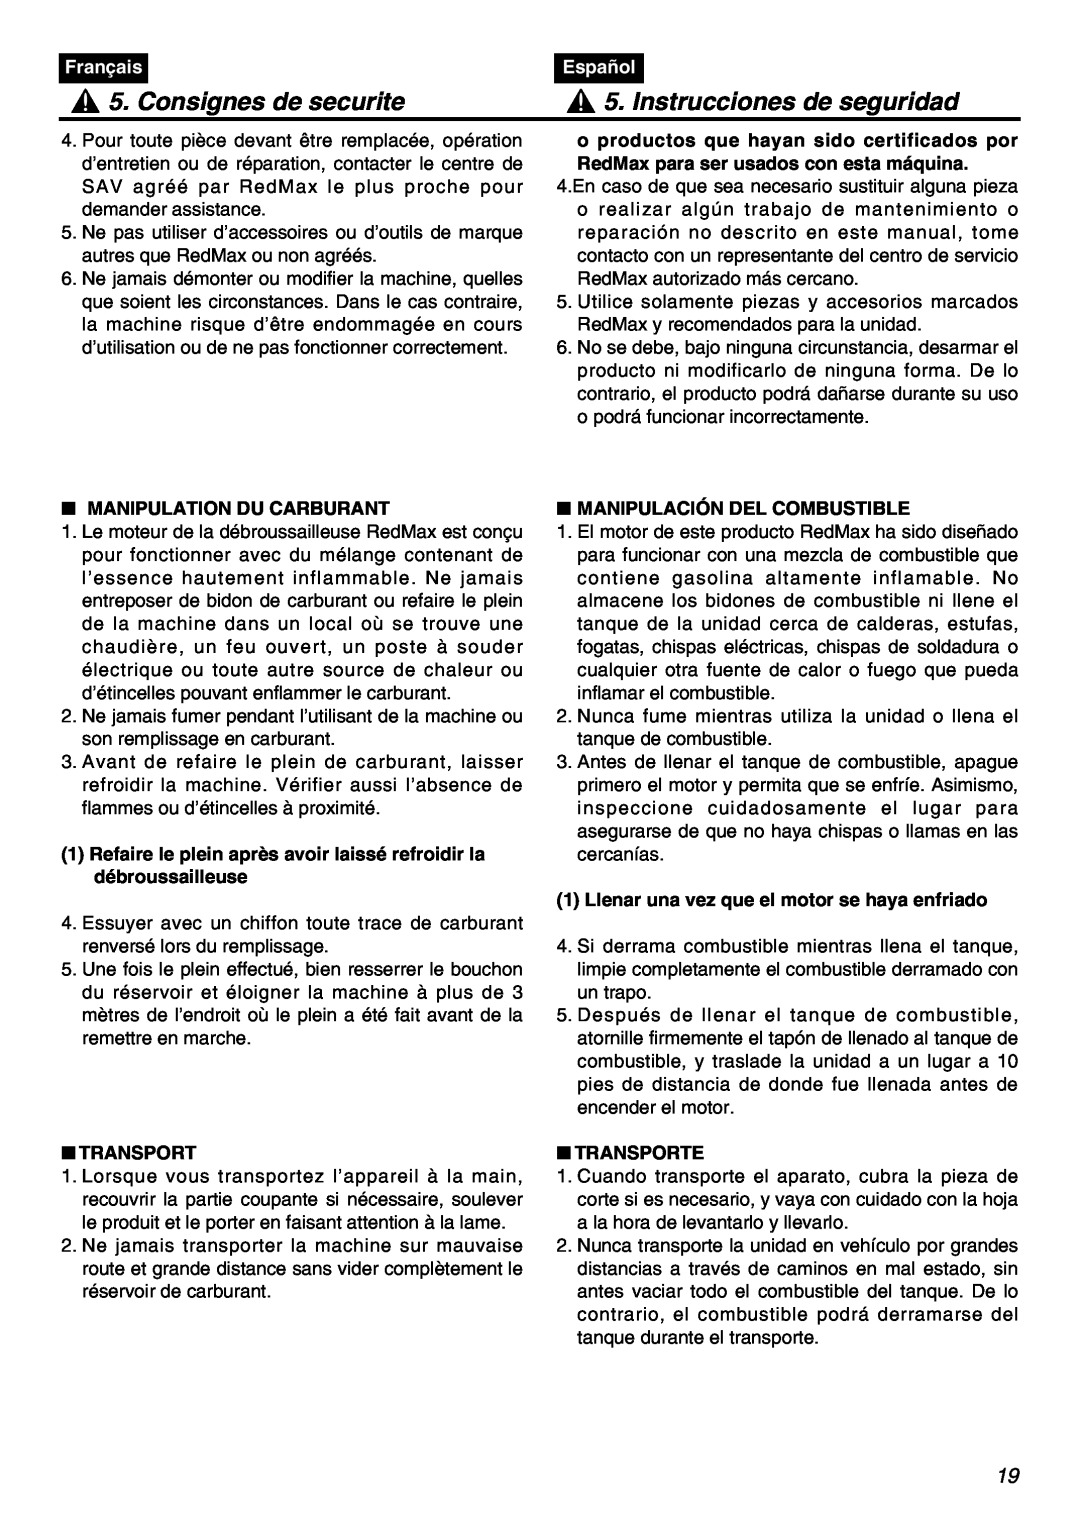 Zenoah BCZ3001S Consignes de securite, Instrucciones de seguridad, Français, Español, Manipulation Du Carburant, Transport 